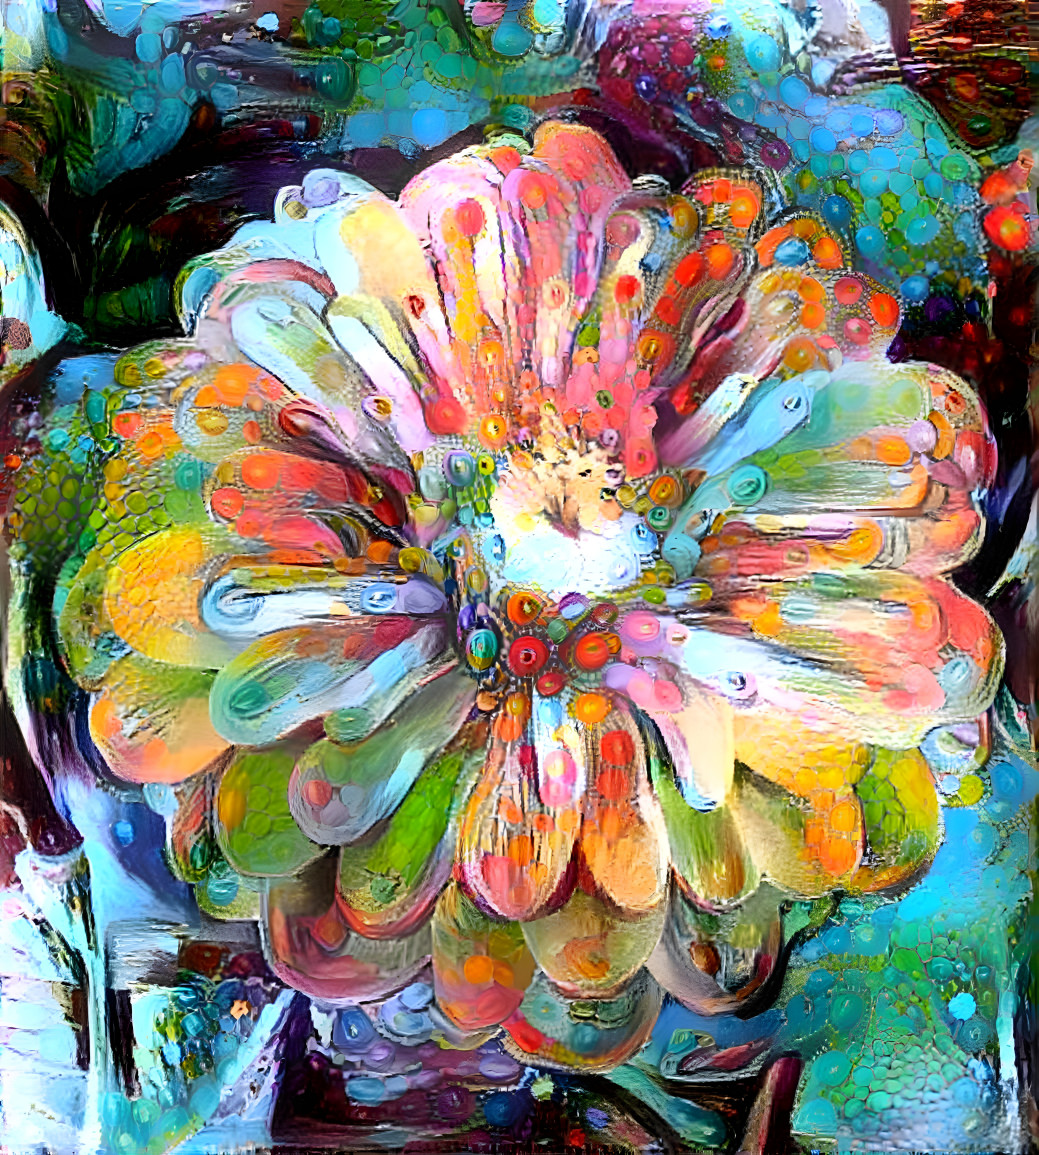 Oil paint FX bloom